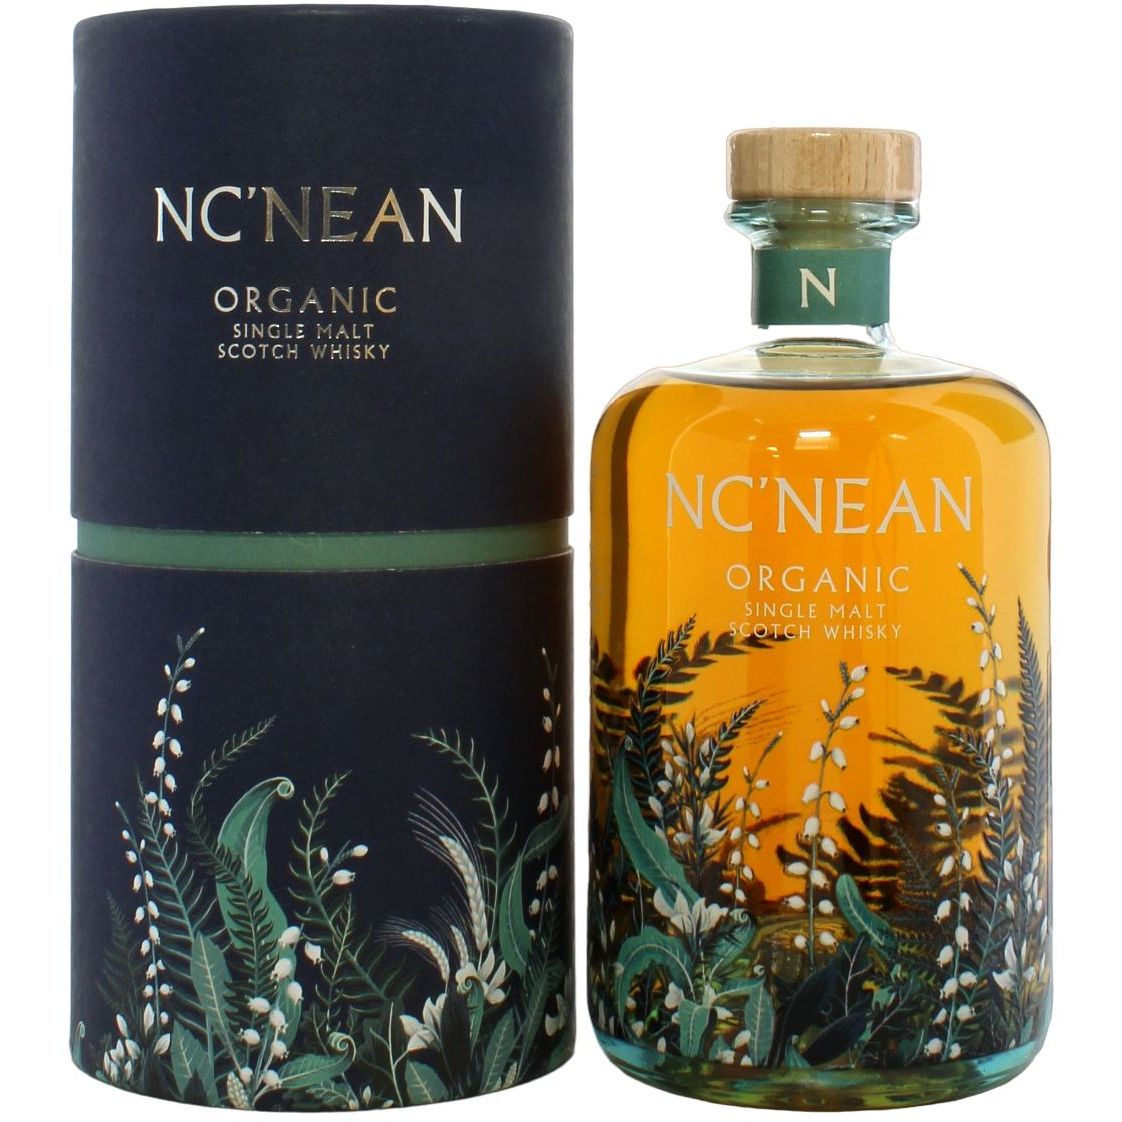 Віскі Nc'nean Organic Single Malt Scotch Whisky 46% 0.7 л, у подарунковій упаковці - фото 1